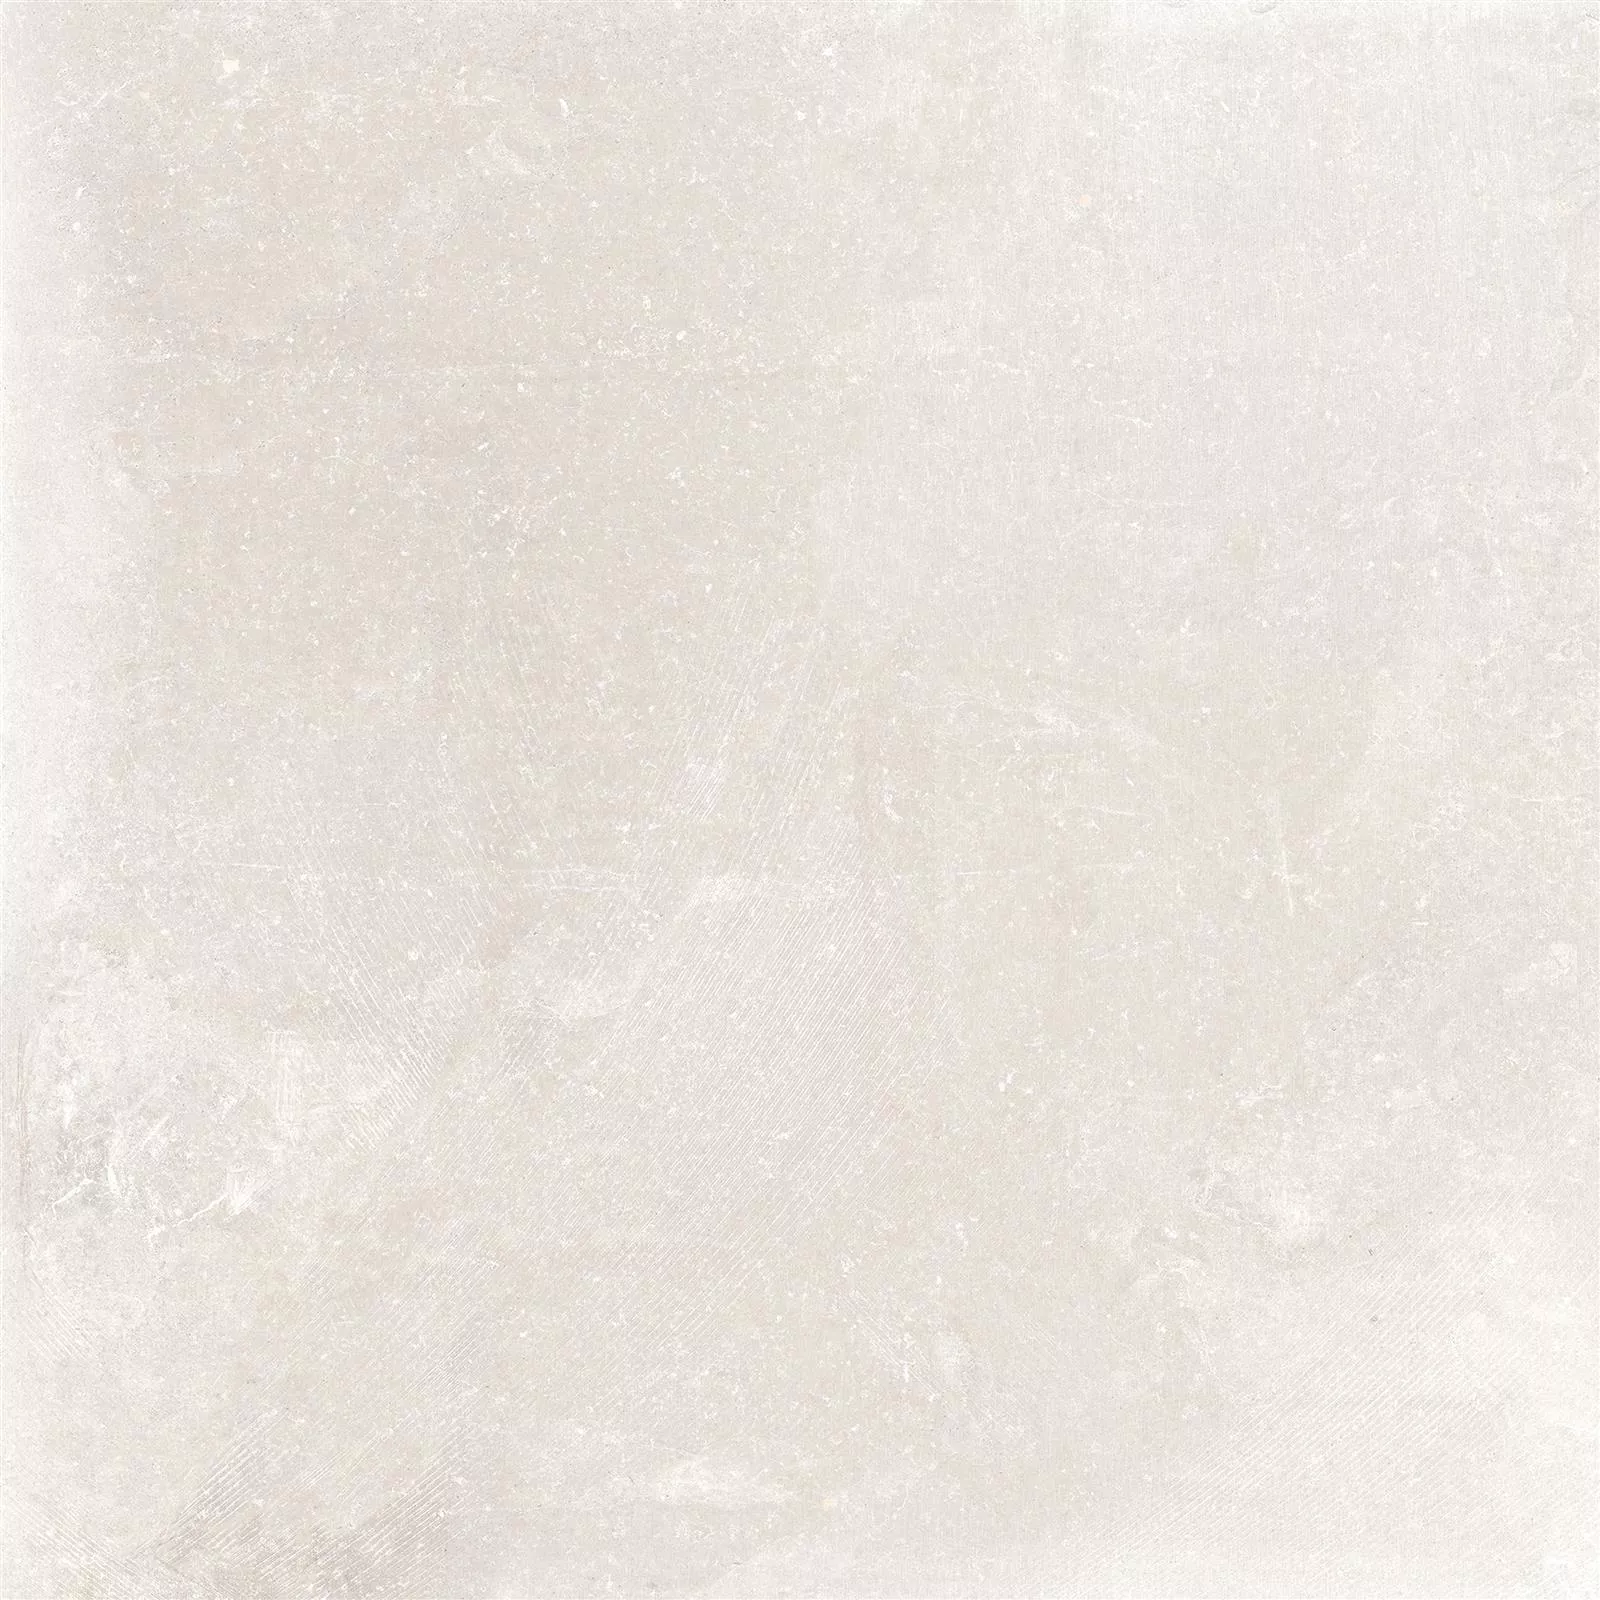 Vzorek Podlahové Dlaždice Kámen Vzhled Horizon Béžová 60x60cm